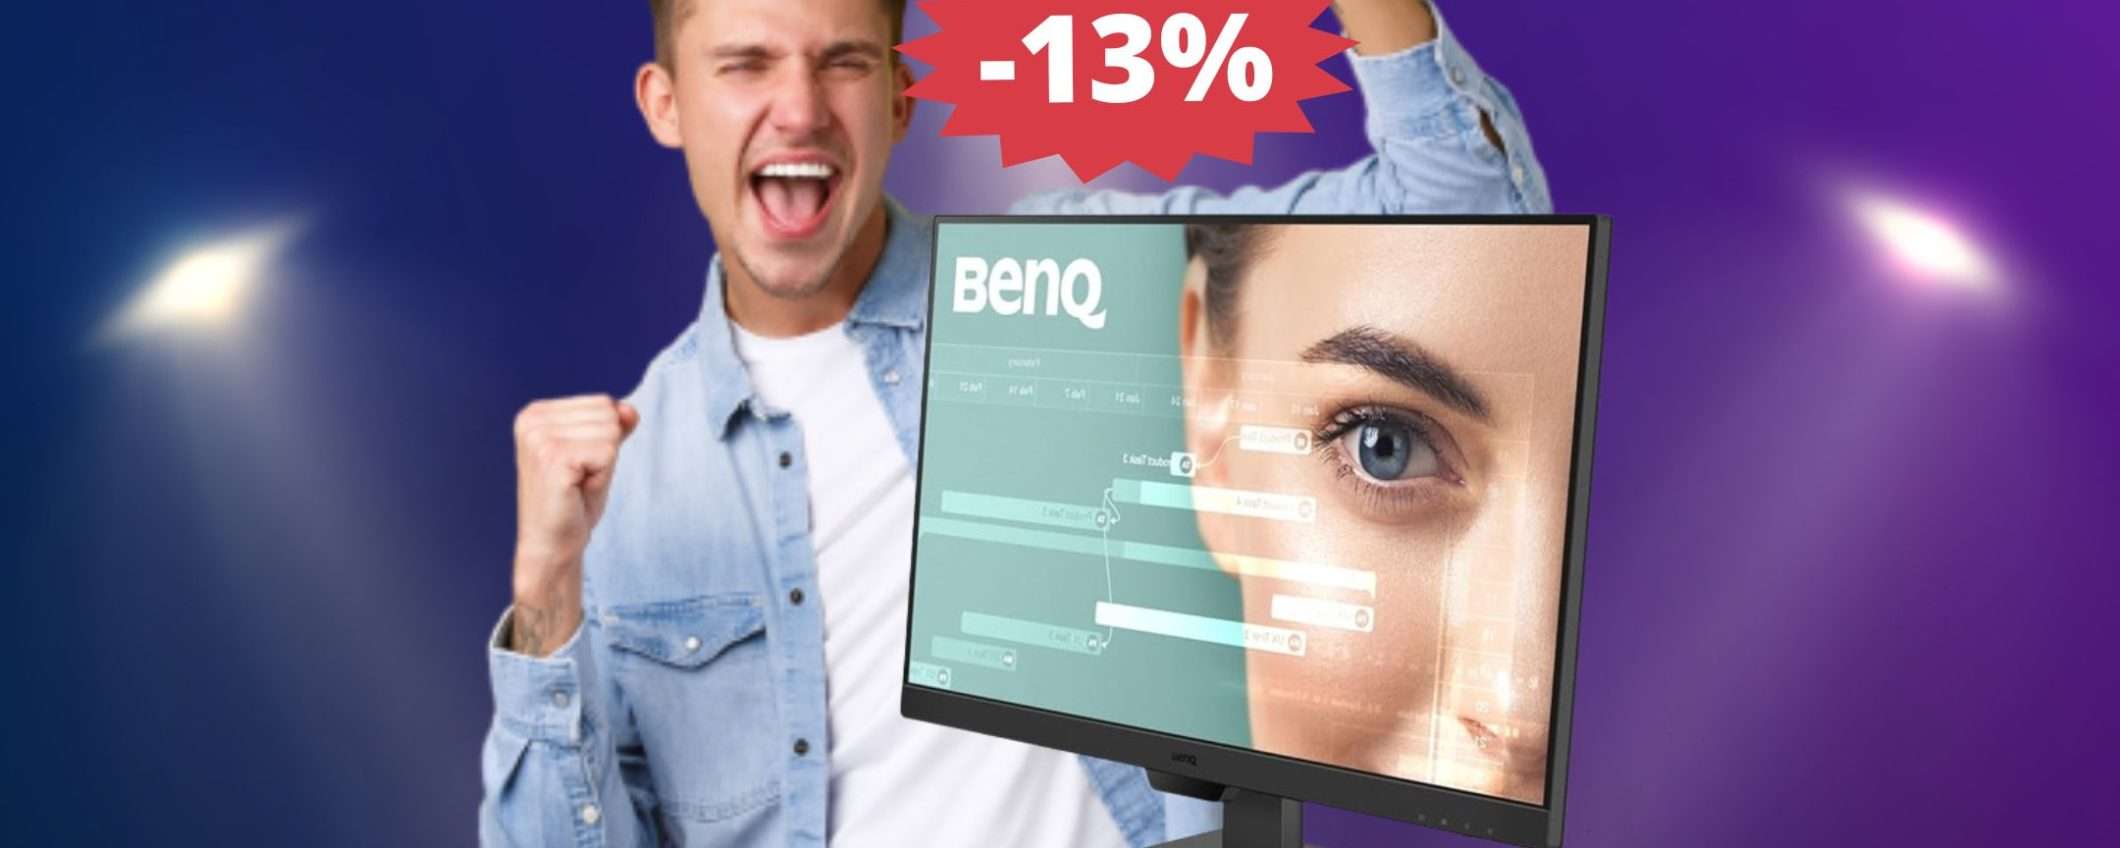 Monitor da gaming BenQ: SUPER sconto del 13% su Amazon